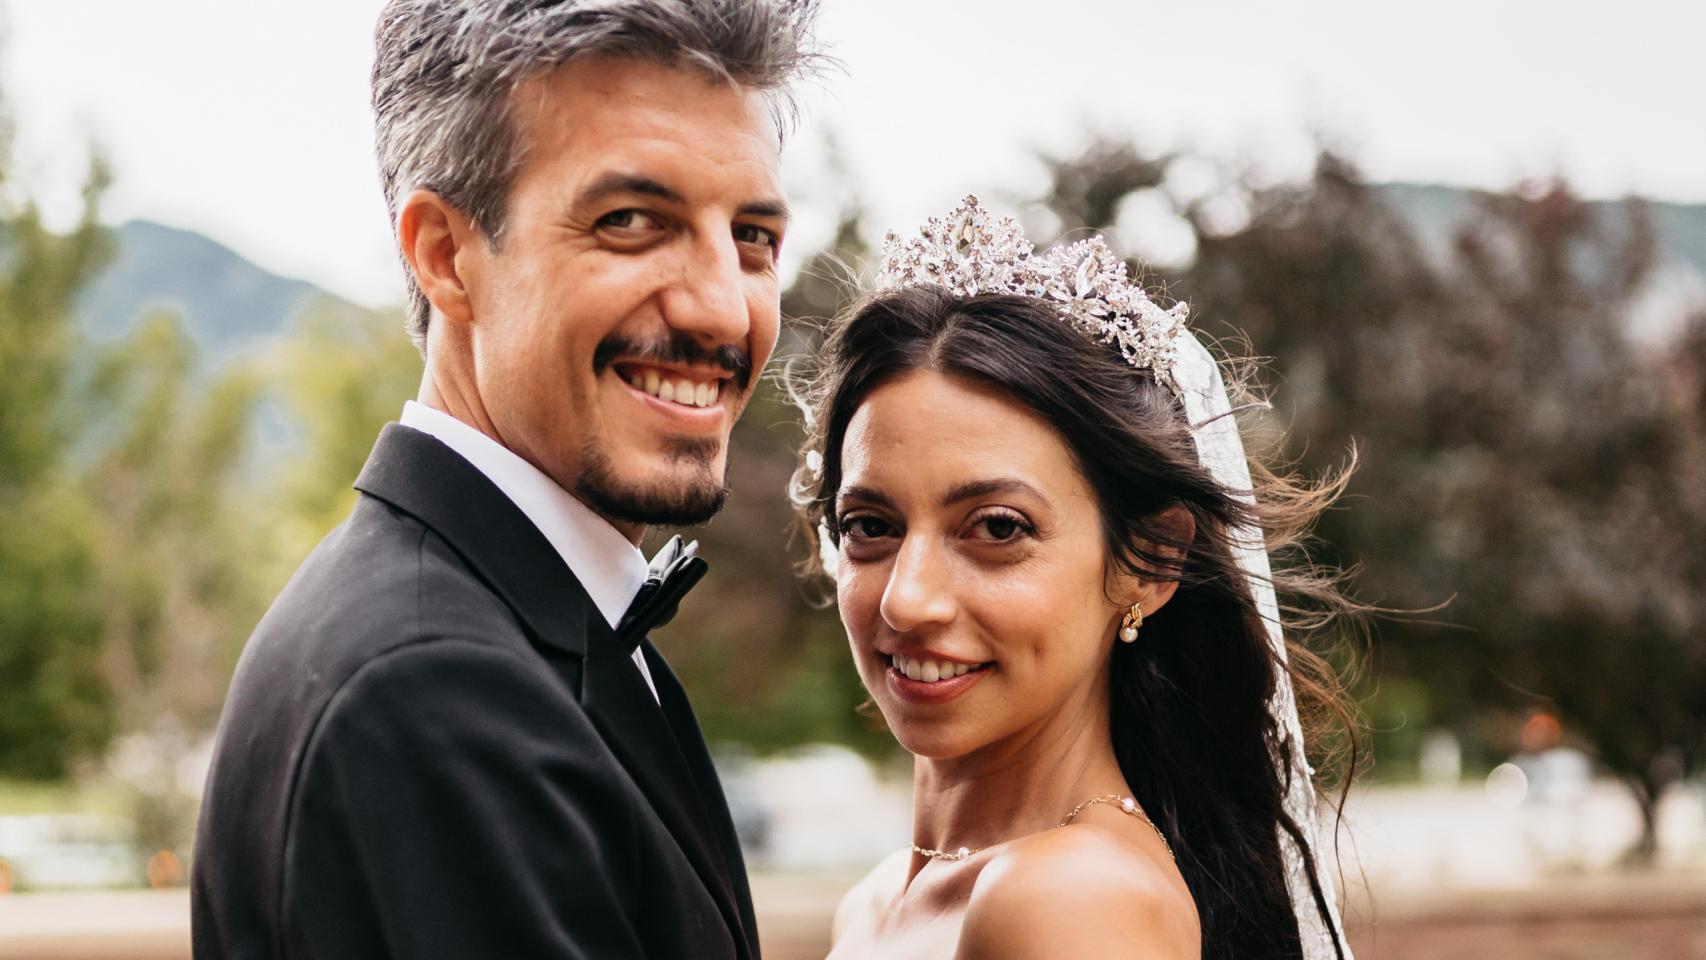 La boda americana del hijo de Antonio Canales con Andrea Gomez las imágenes exclusivas de su gran día